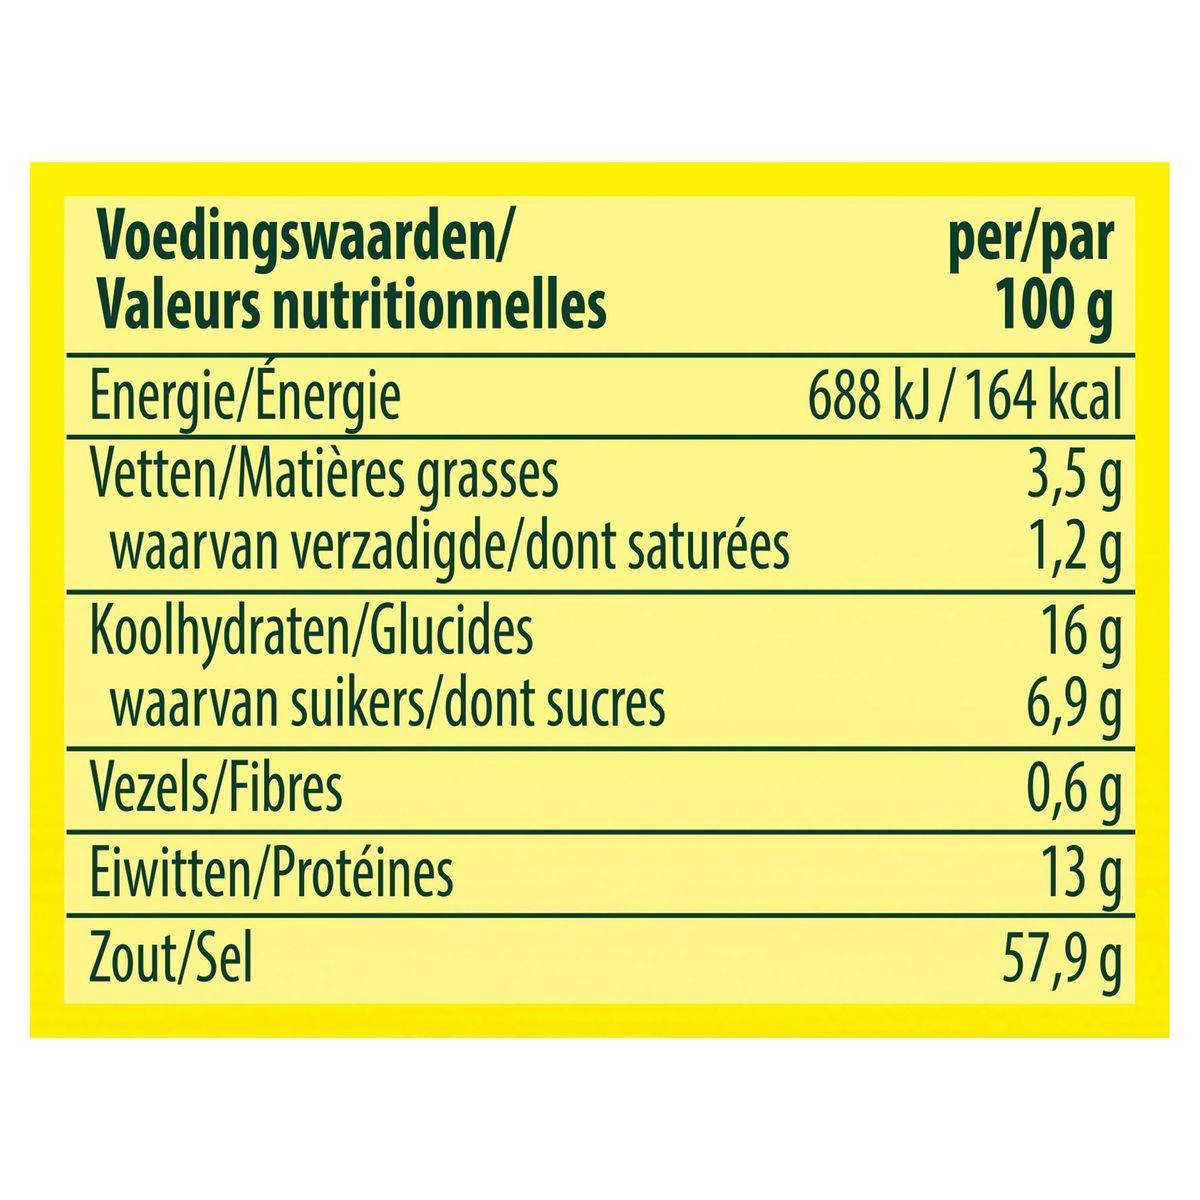 Knorr Aromat Poudre Condiment Nature (Sachet) 38 g